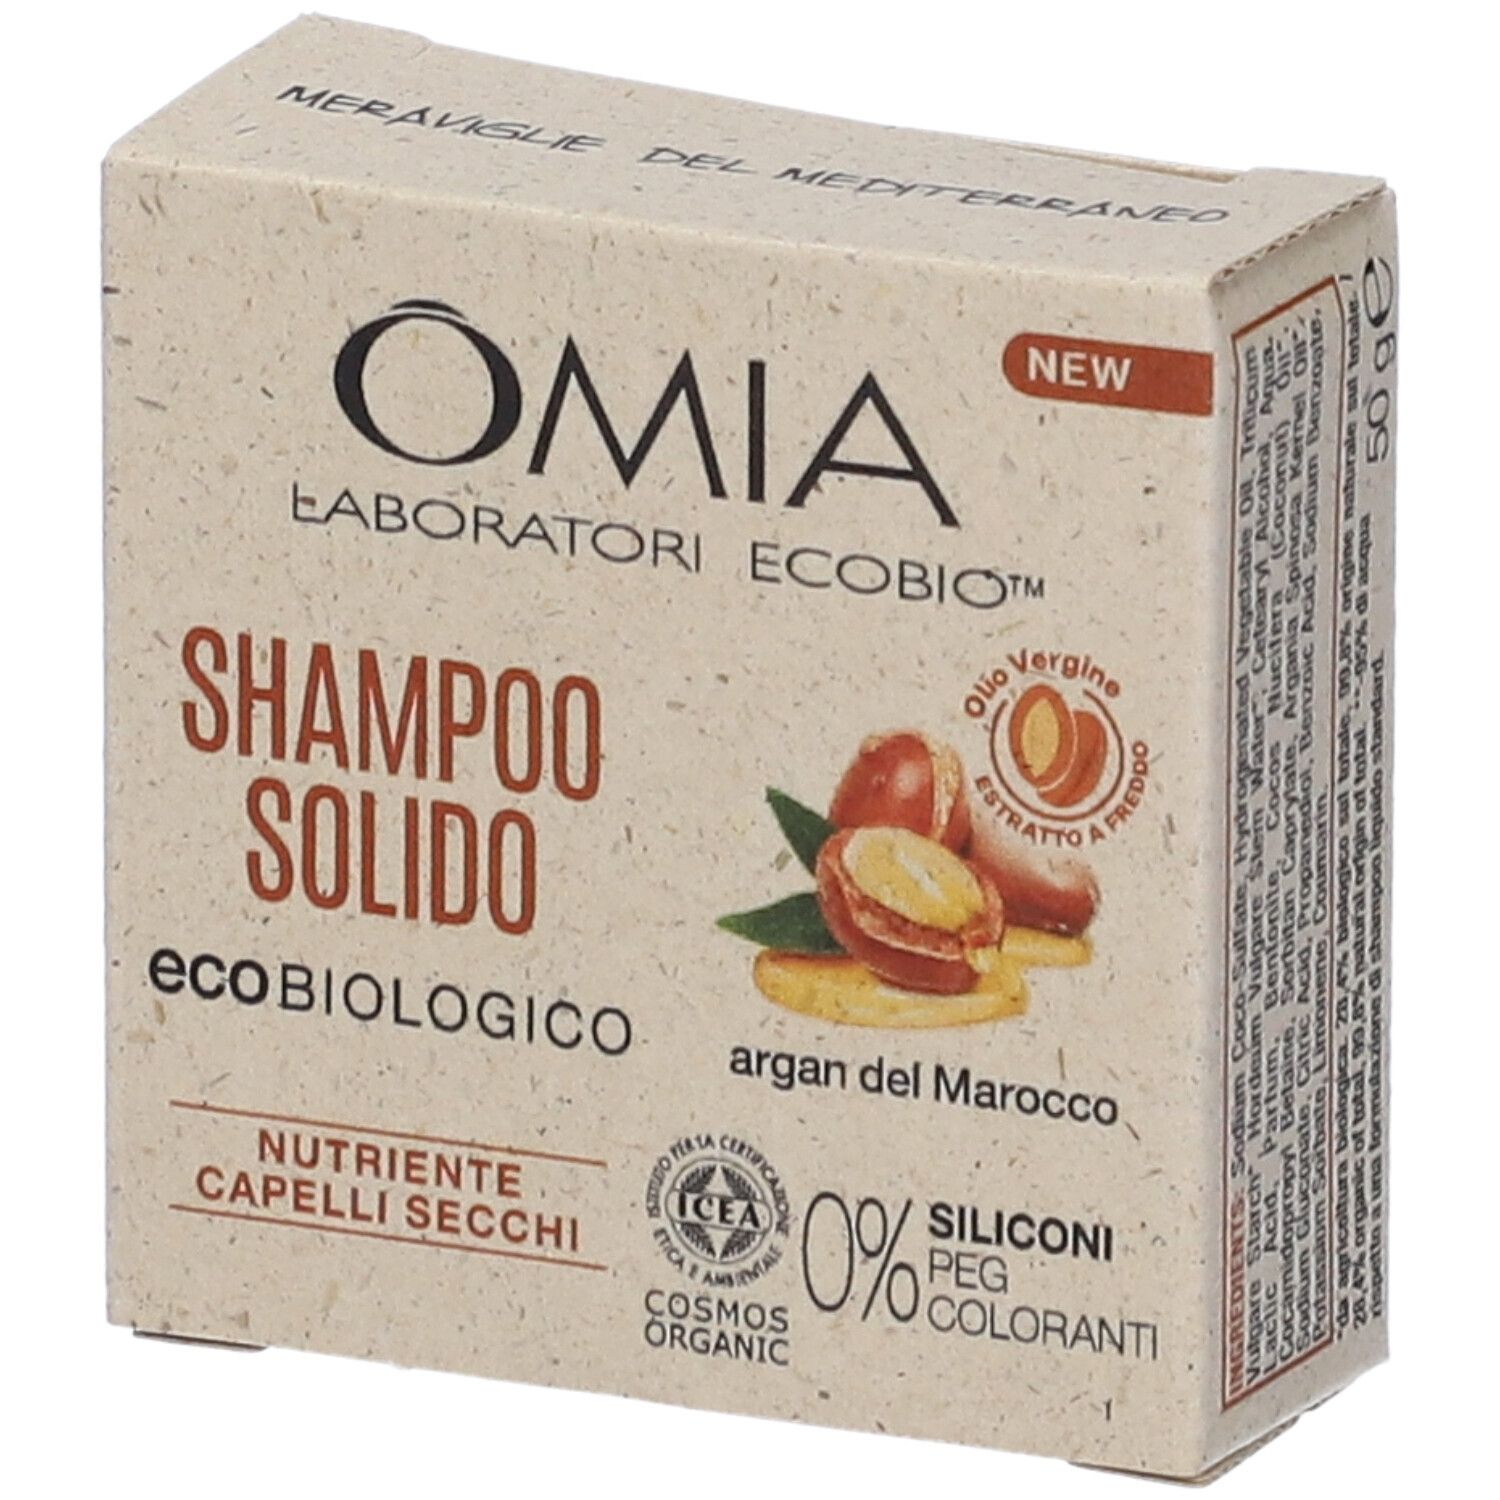 OMIA Shampoo Solido Argan Del Marocco